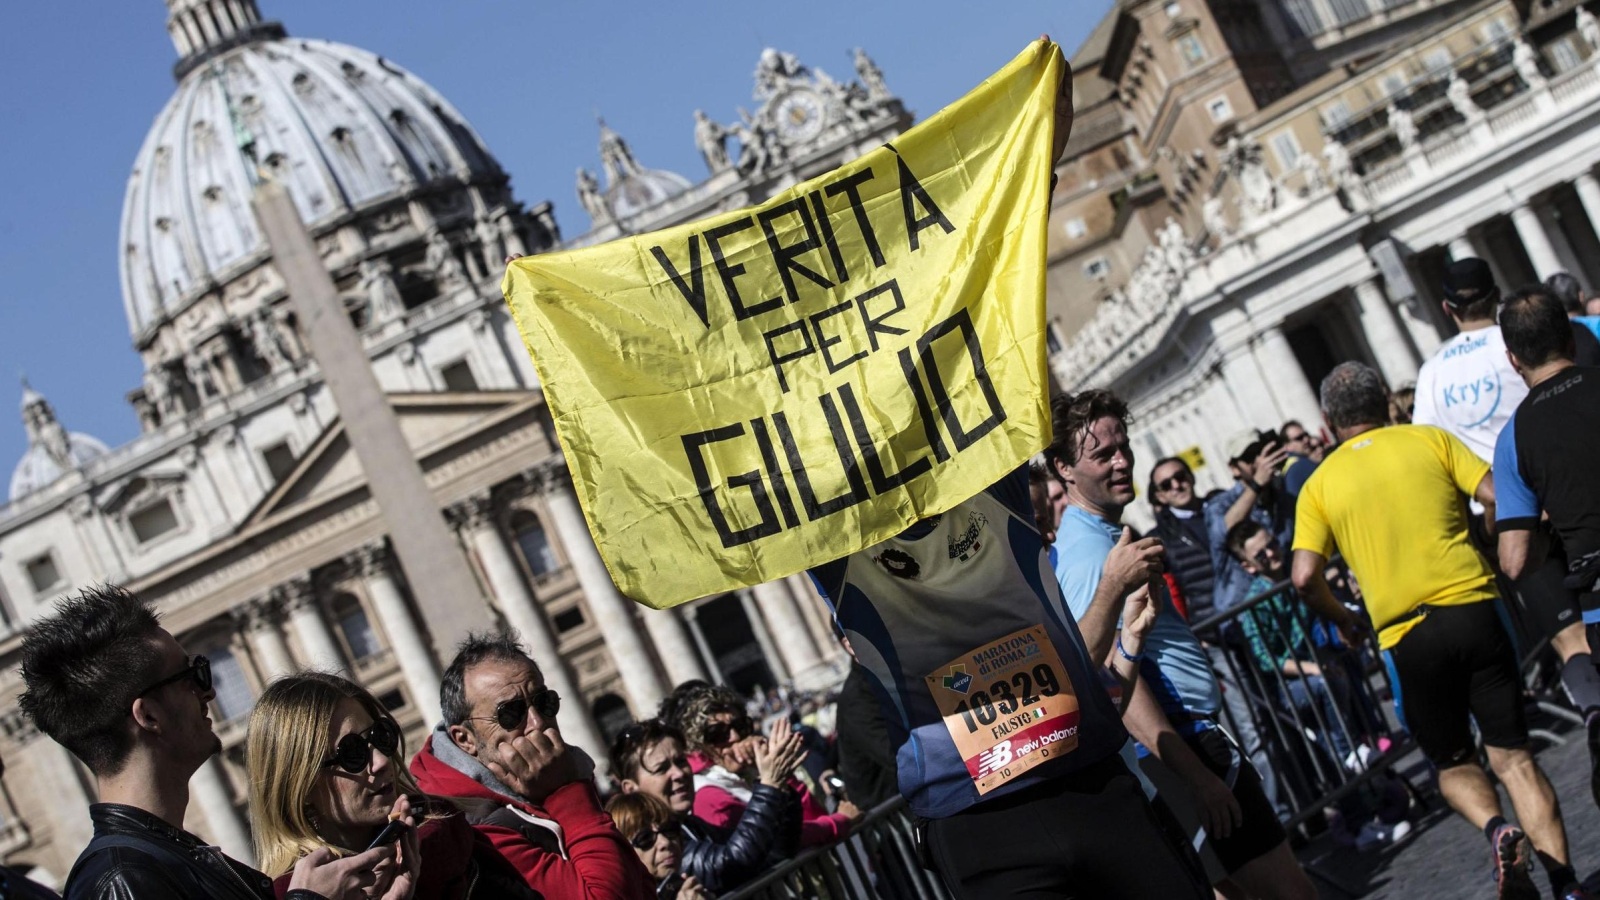 لافتة تطالب بالحقيقة في قضية ريجيني رفعت الأحد خلال ماراثون في العاصمة الإيطالية روما (الأوروبية)